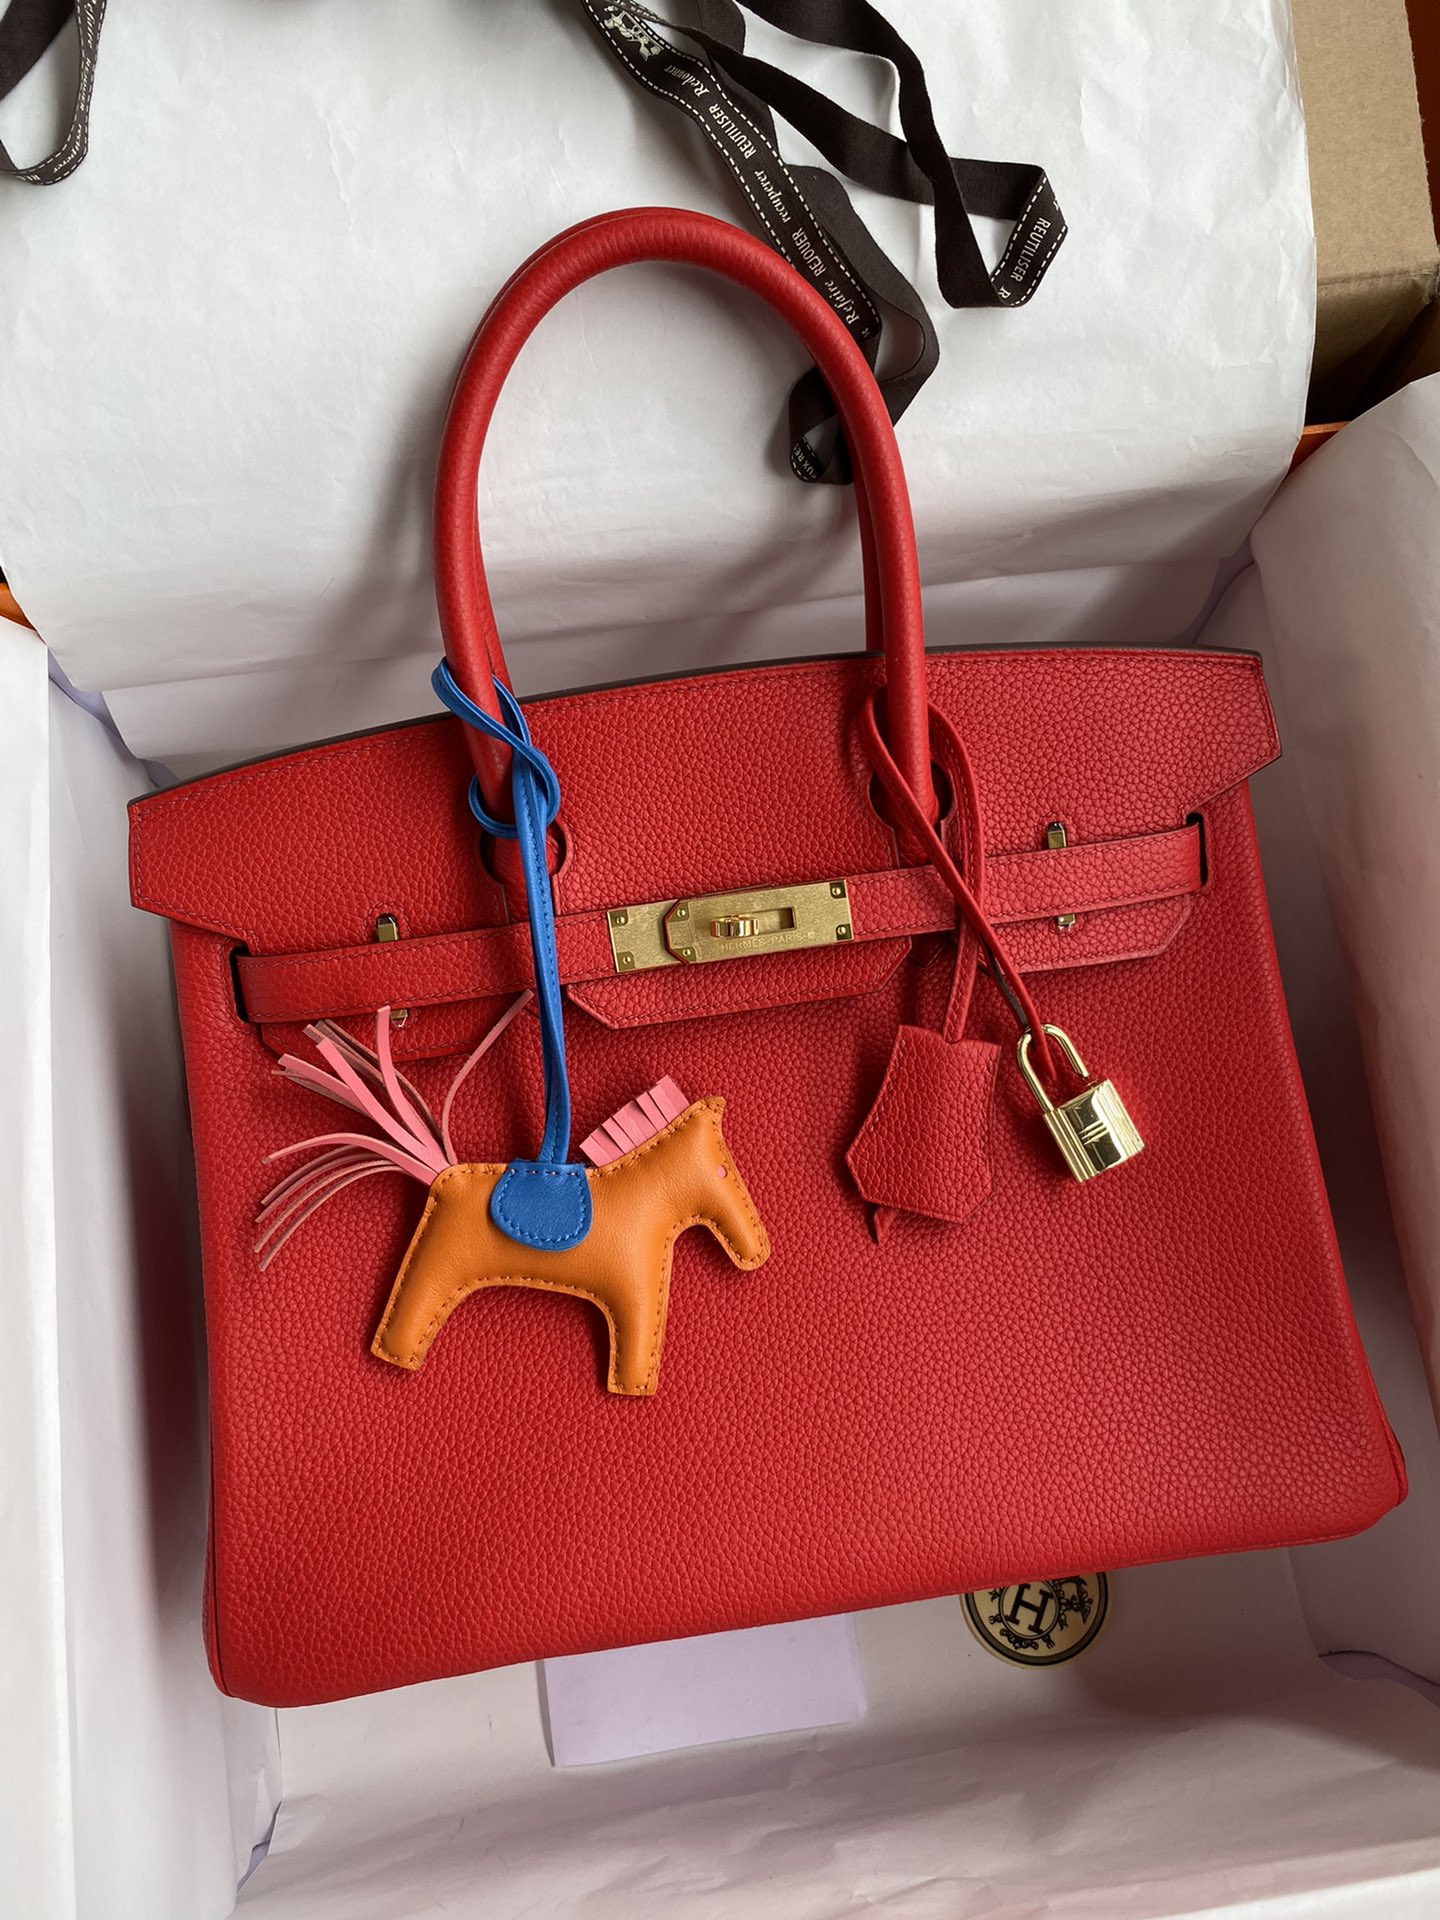 Hermes Birkin Bags Handbags Red Sewing Silver Hardware Calfskin Cowhide